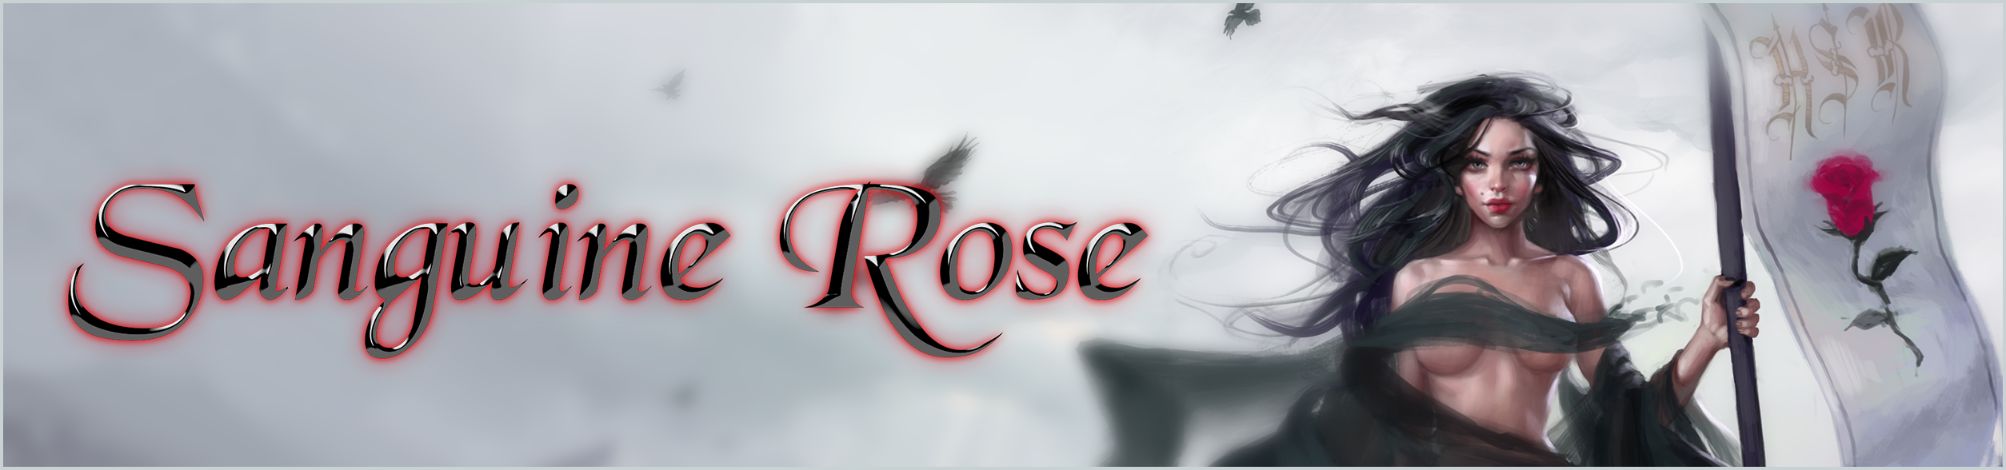 Sanguine Rose Apk